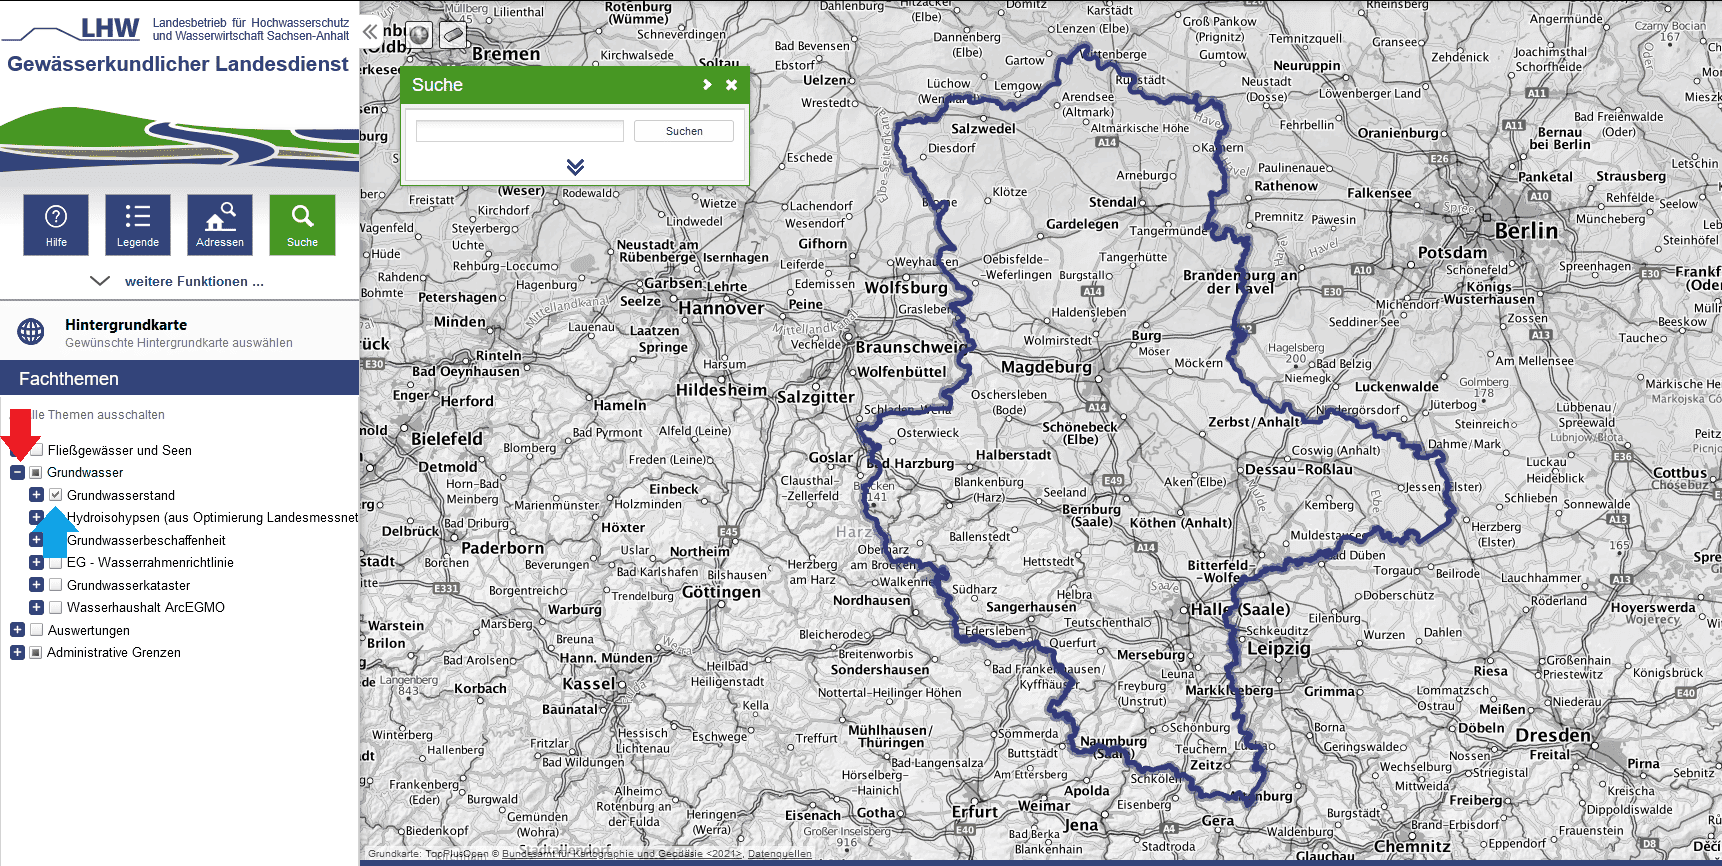 Bild 1 der Grundwasserstand anleitung für Sachsen-Anhalt